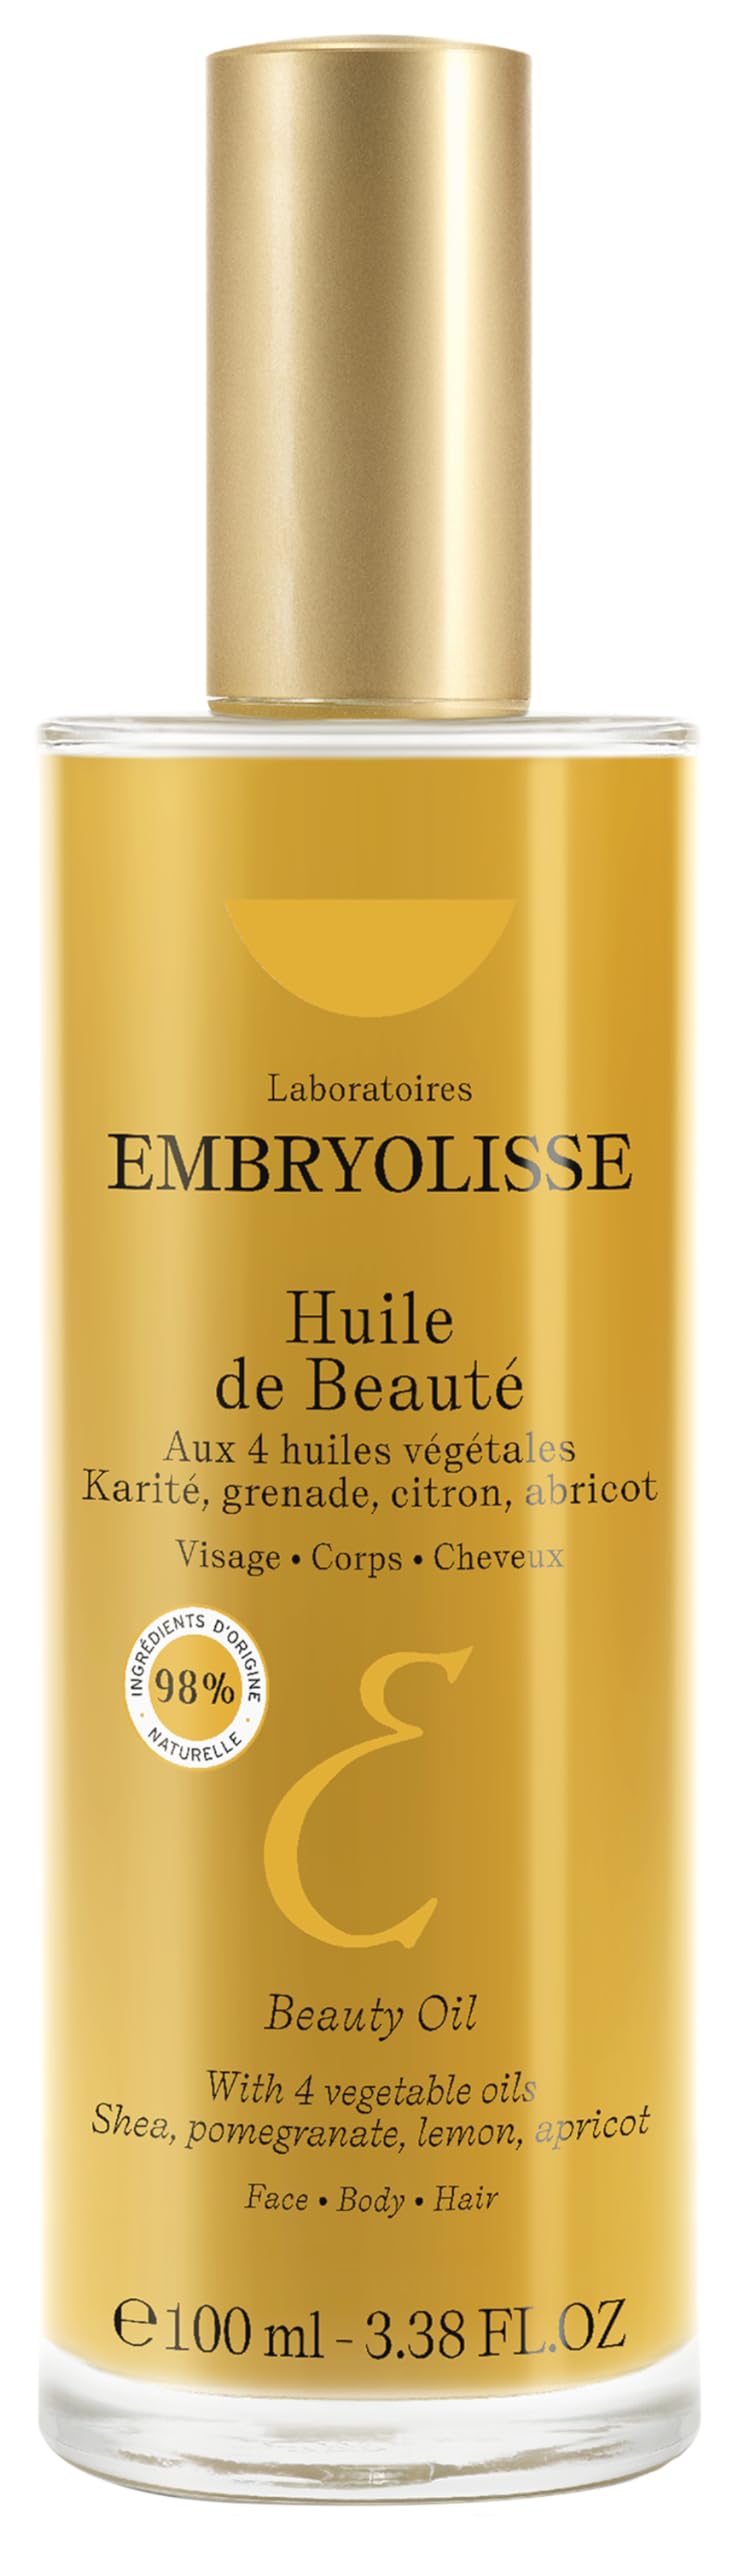 Embryolisse huile de beaute 100ml